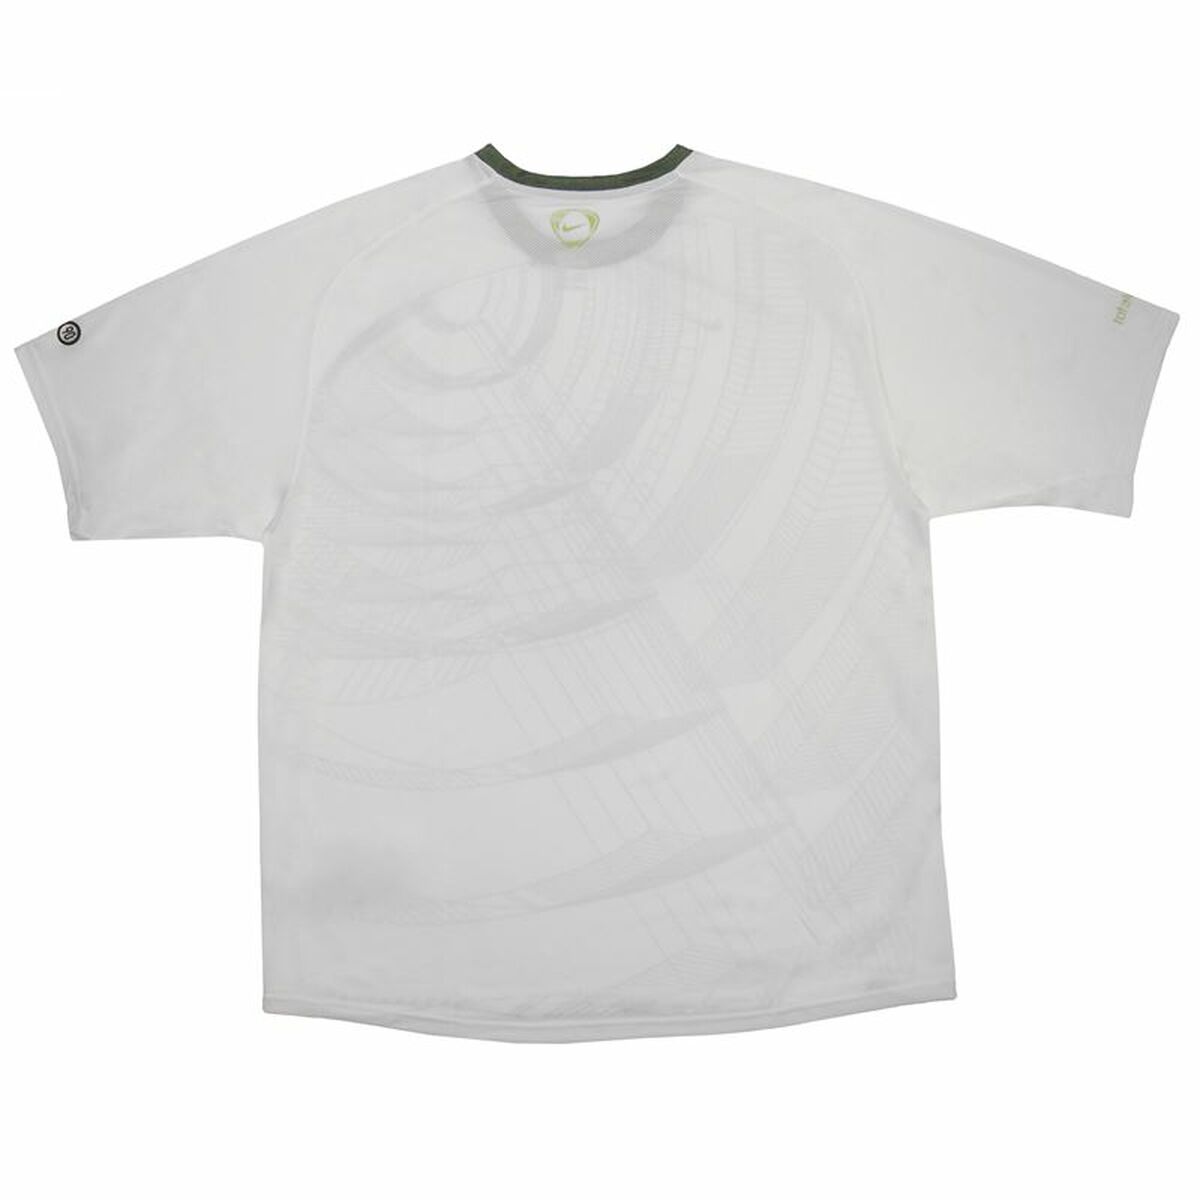 Men’s Short Sleeve T-Shirt Nike Summer T90 White